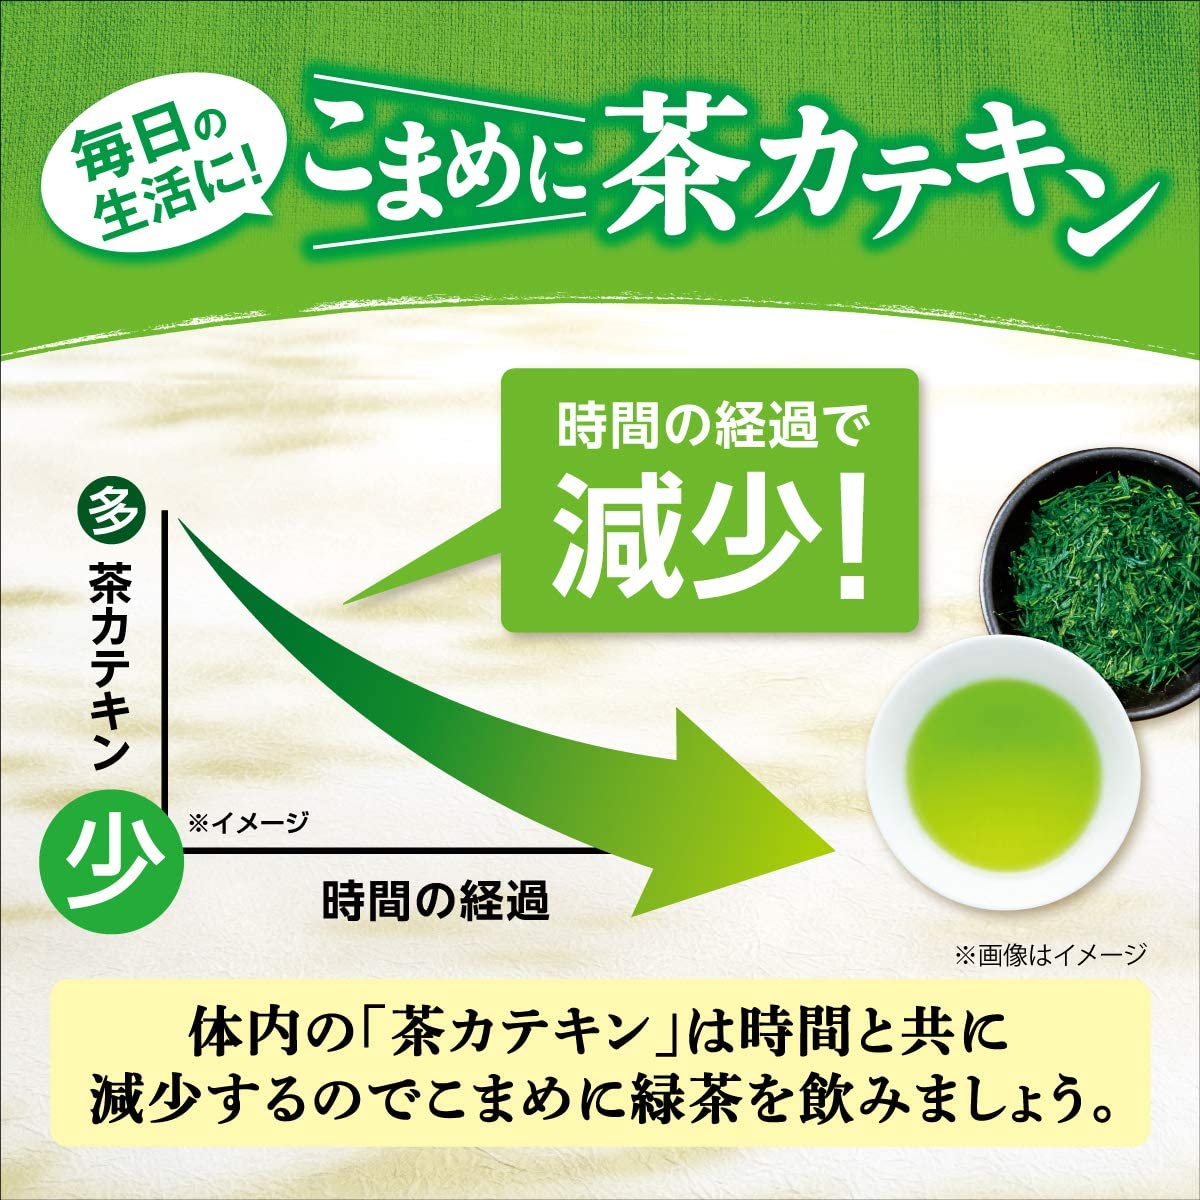 Itoen home size green tea 150g – CosmeBear Official - Japanese